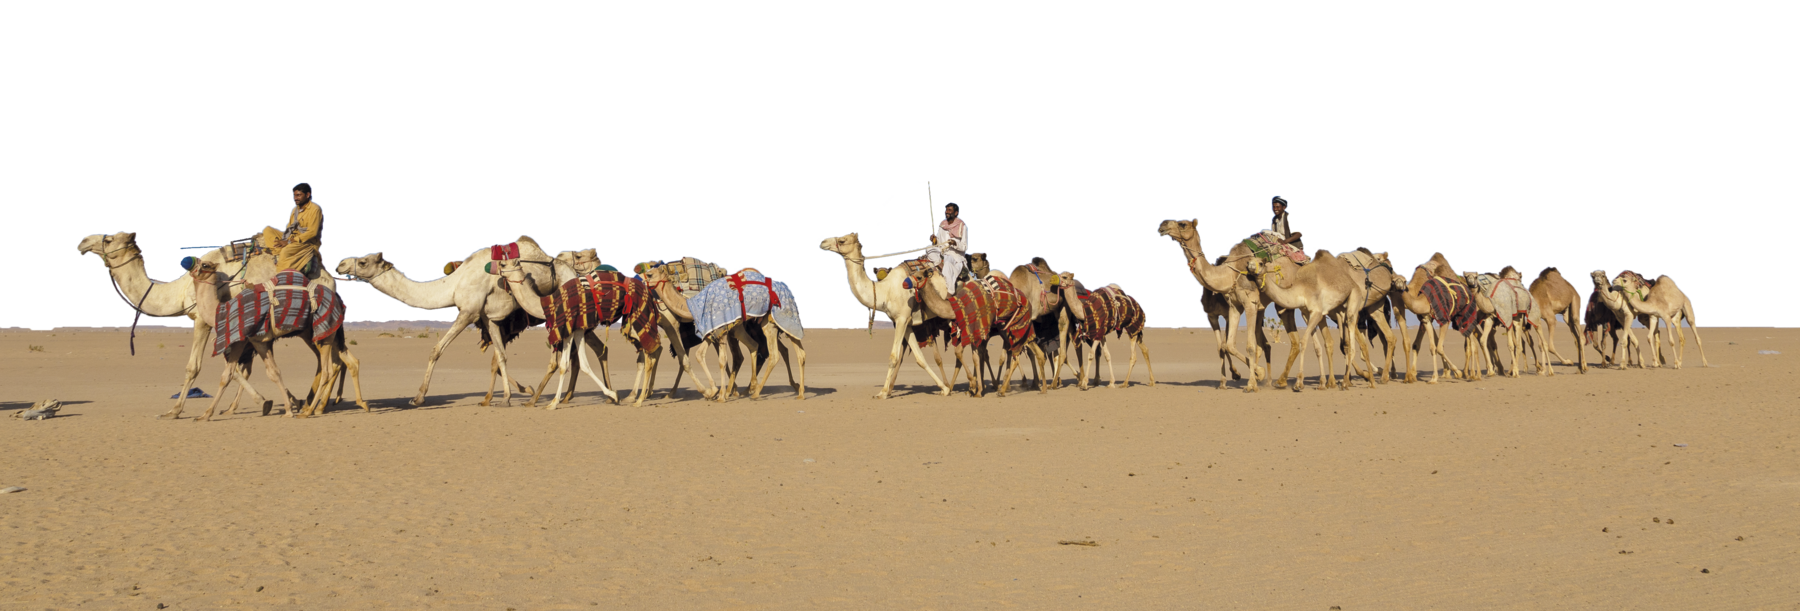 Fotografia. Três homens em um deserto, conduzindo camelos e dromedários em fila.